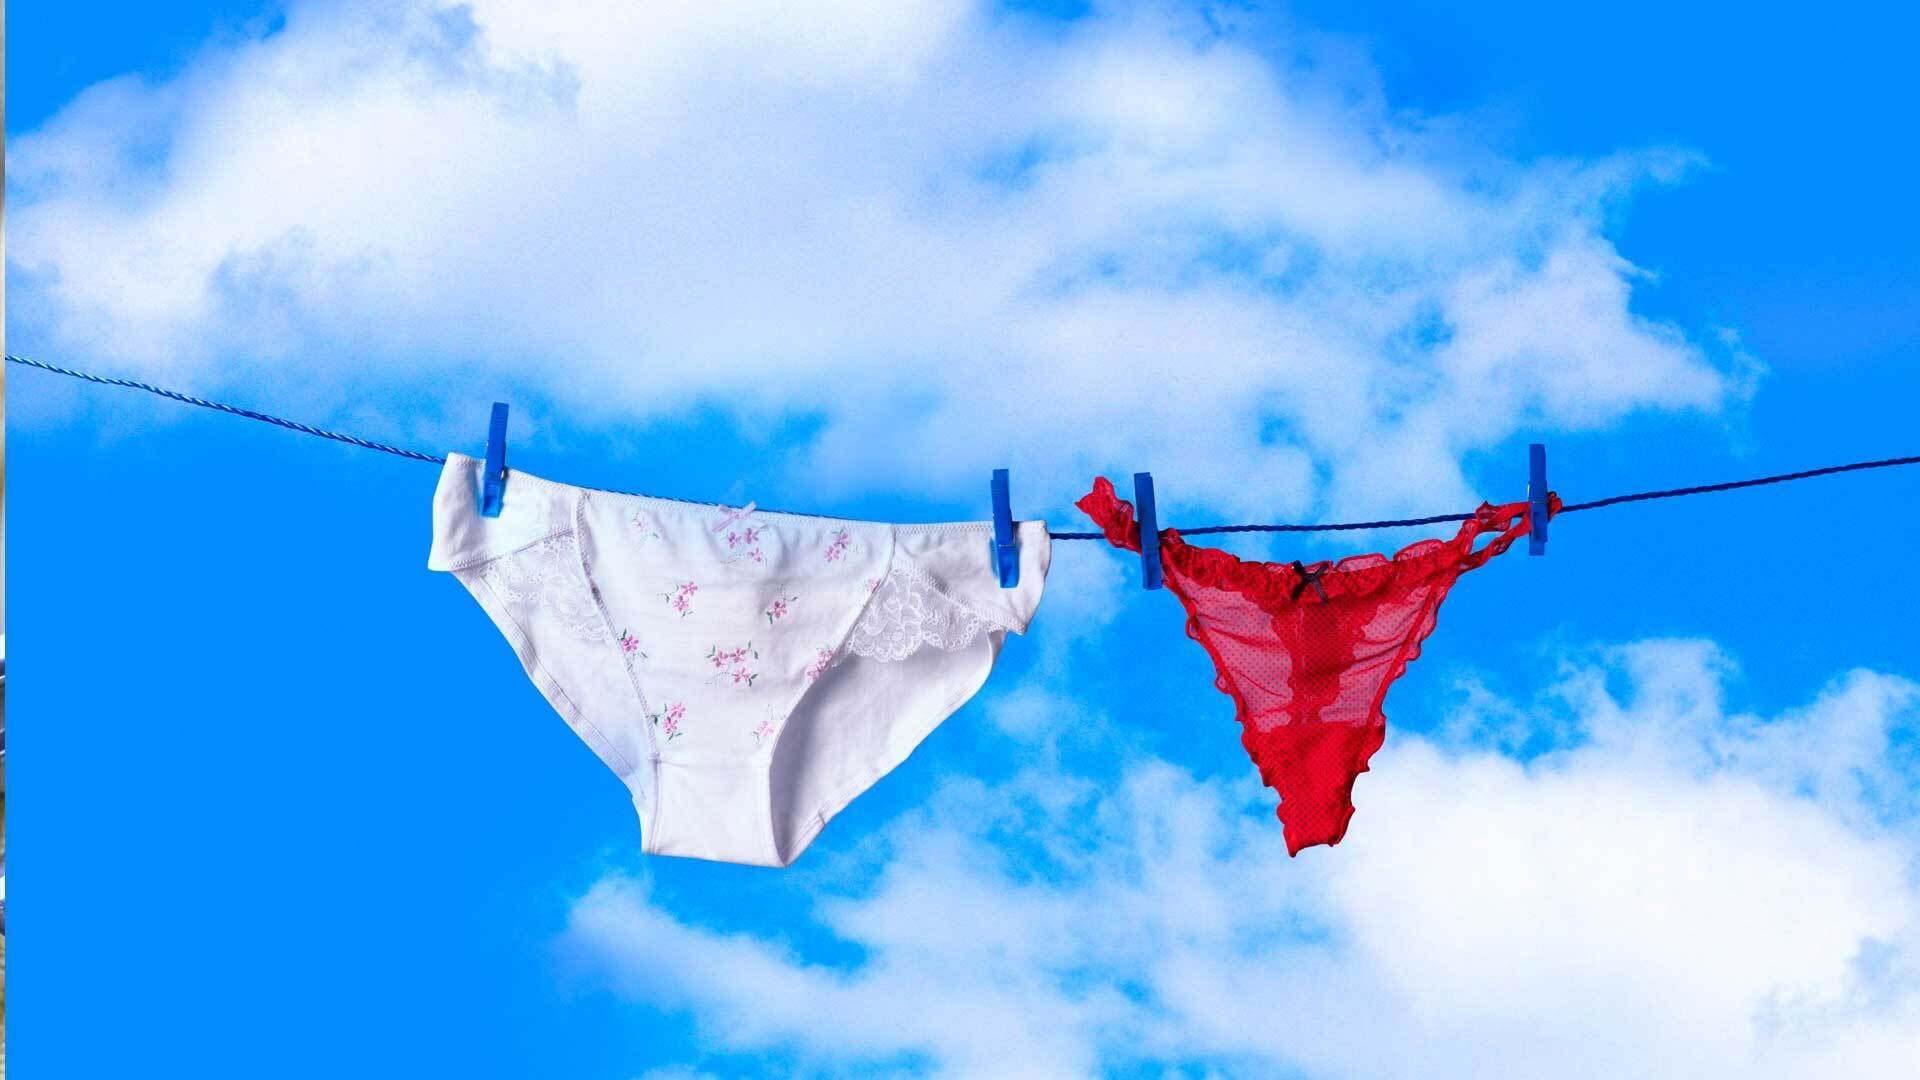 BHs, Slips und Co.: So wascht ihr eure Unterwäsche richtig!